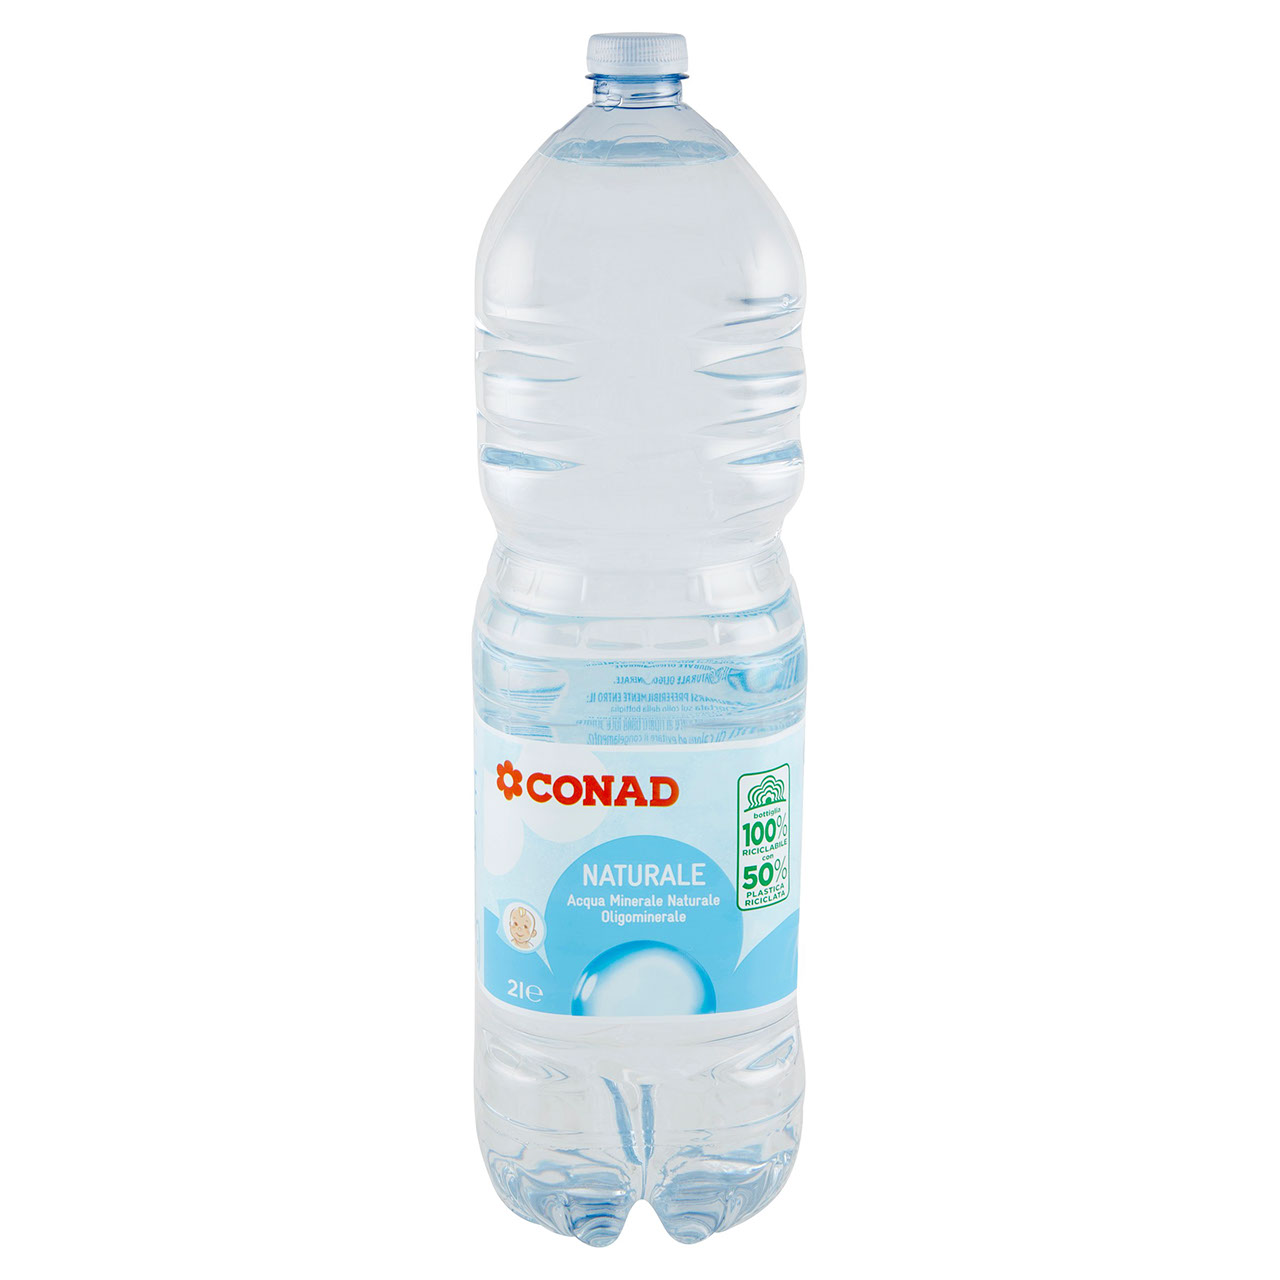 Acqua Minerale Naturale 2 l Conad vendita online